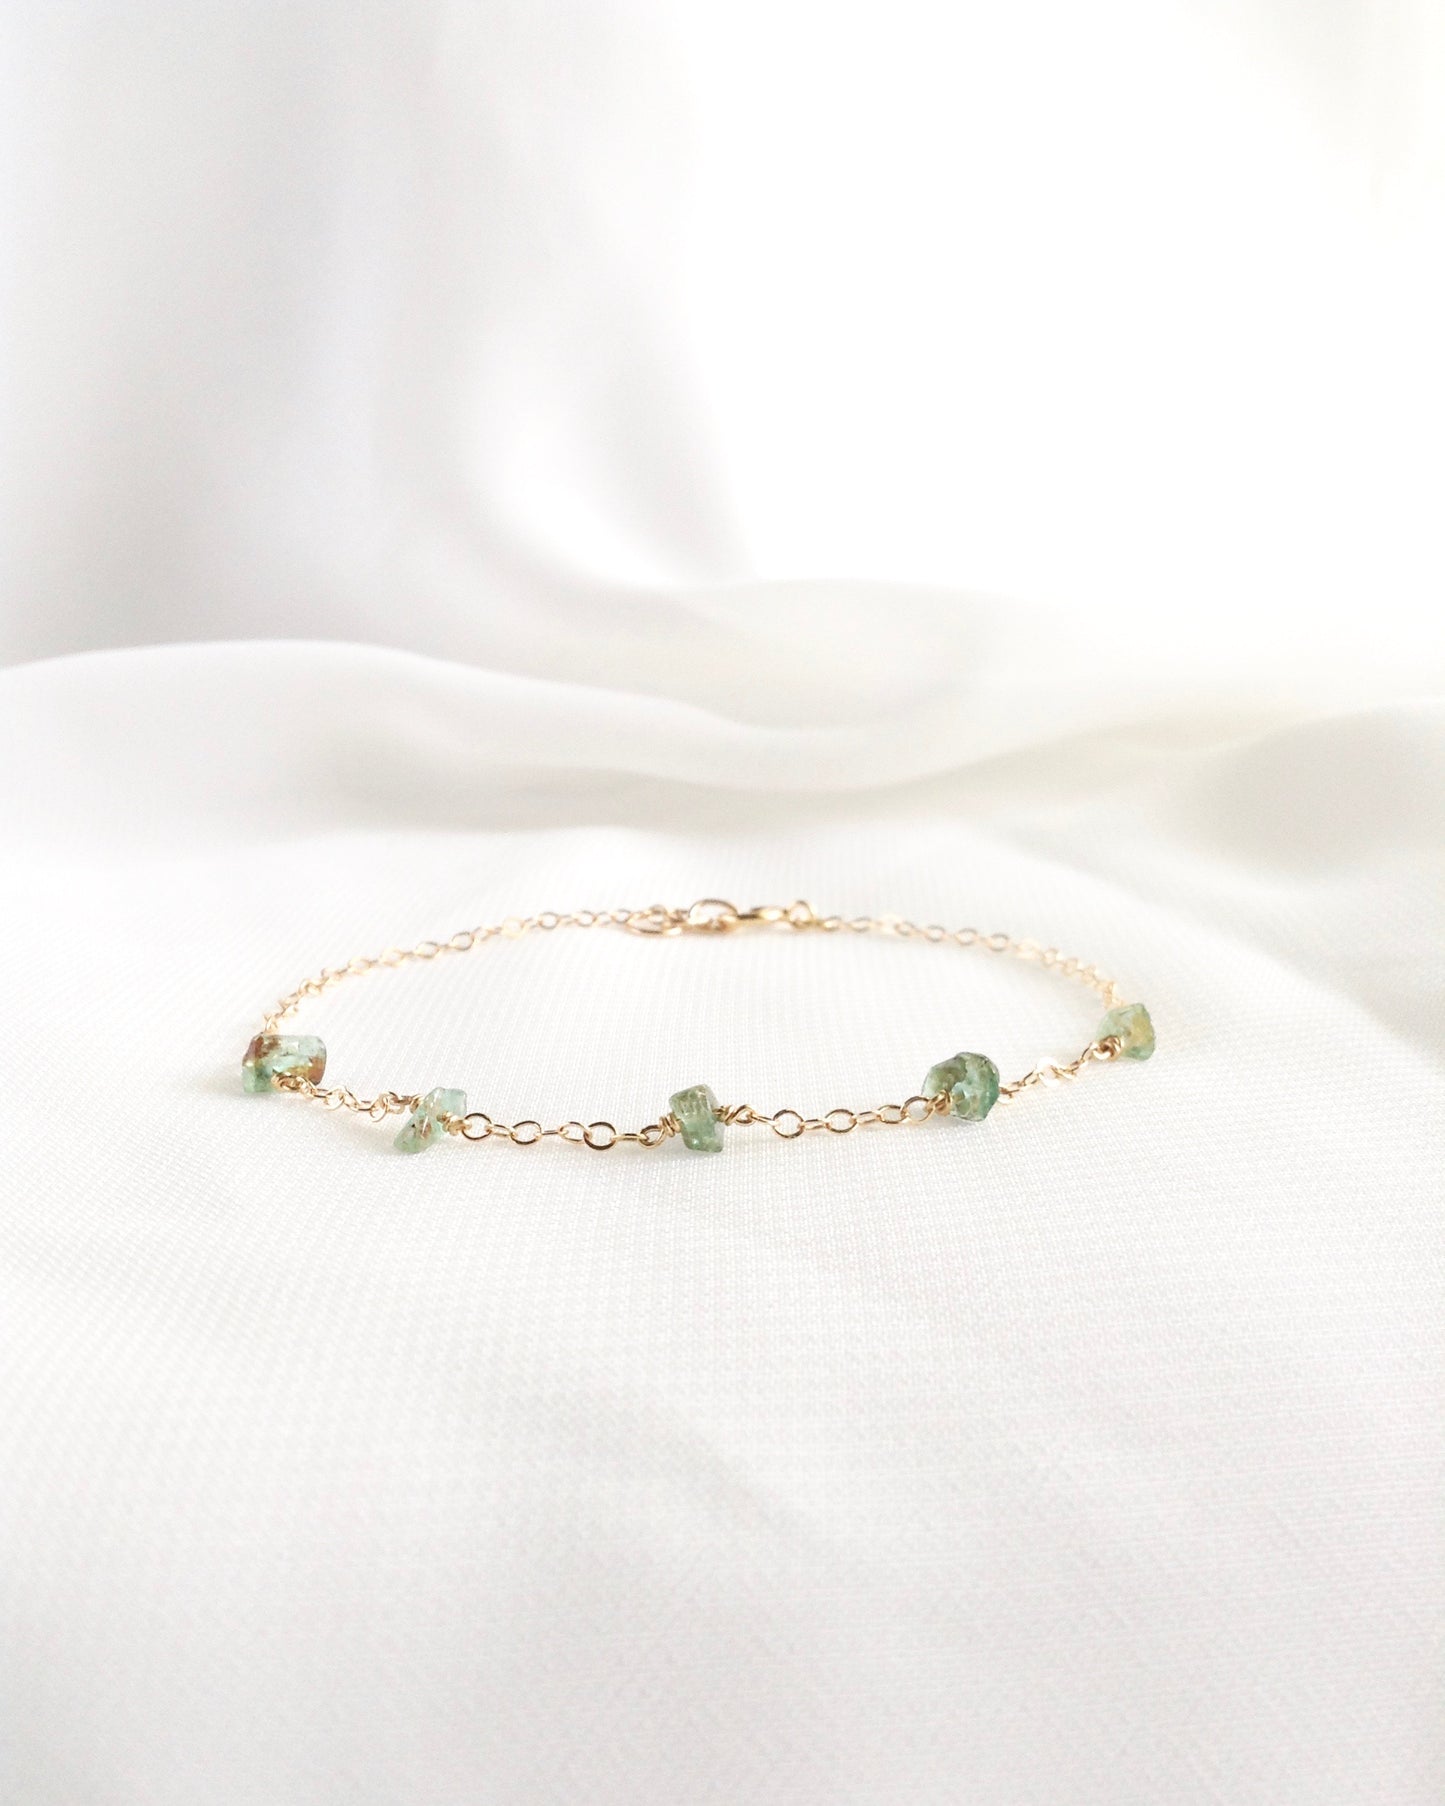 Raw Emerald Bracelet | Dainty Gemstone Bracelet | IB Jewelry